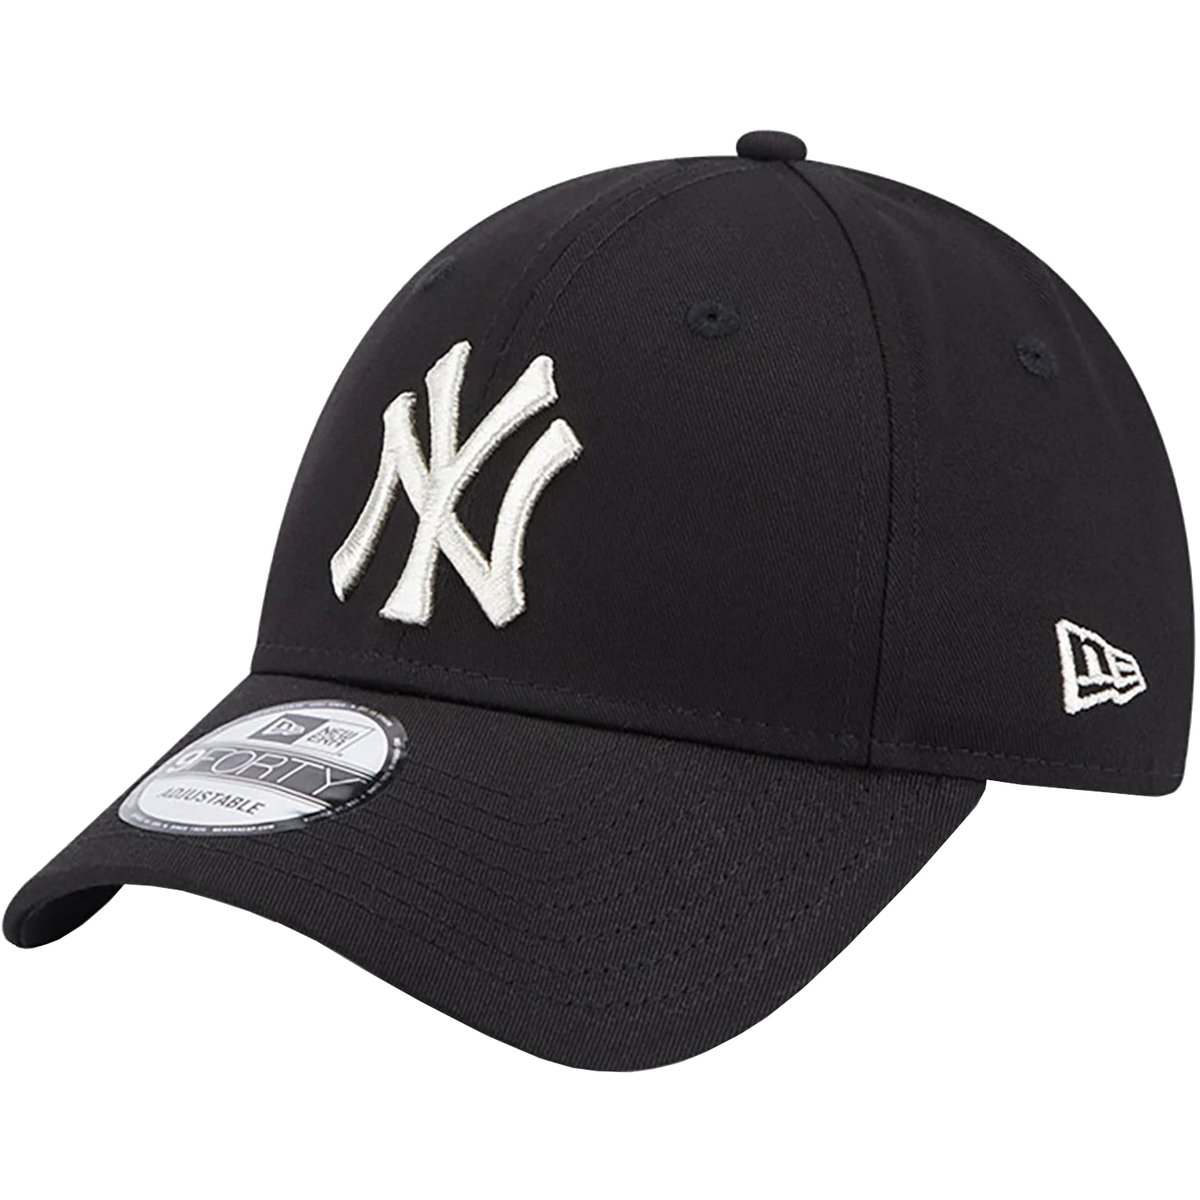 Αξεσουάρ Γυναίκα Κασκέτα New-Era New York Yankees 940 Metallic Logo Cap Black